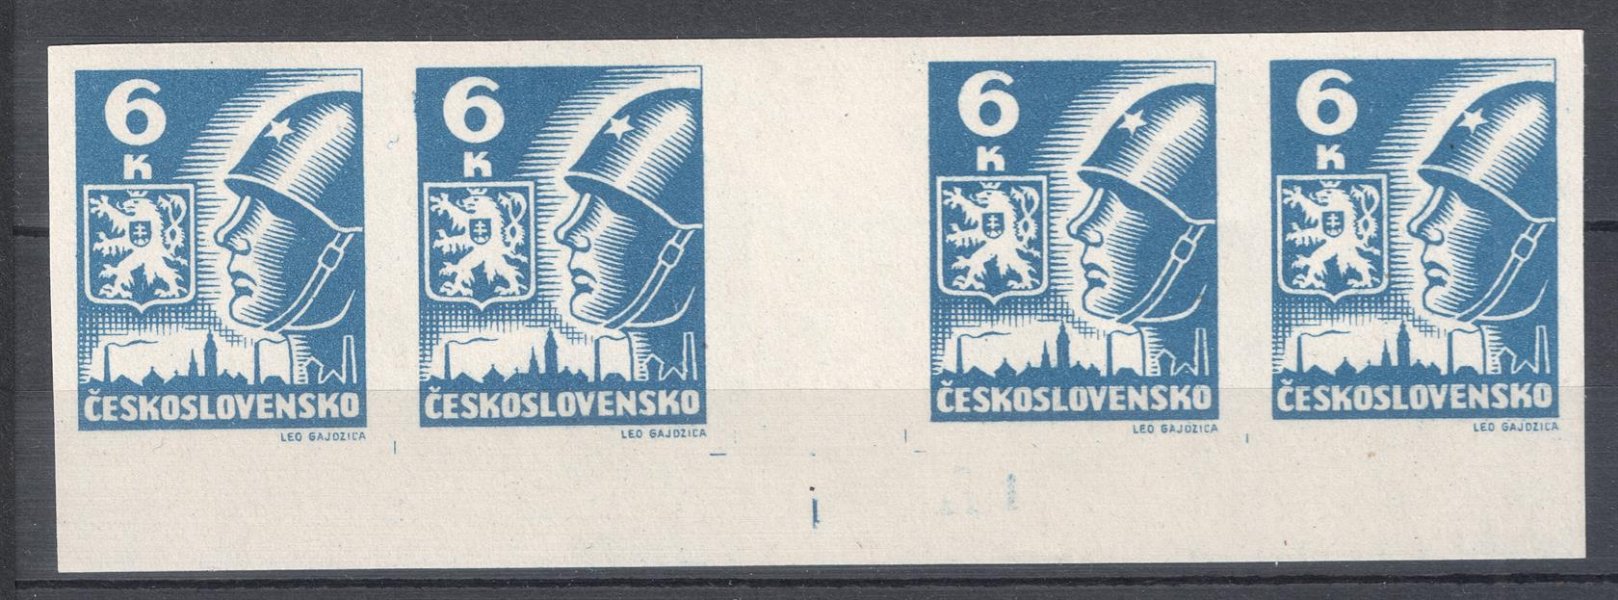 356 - krajové čtyřznámkové meziarší hodnoty 6K modrá, na okraji rozměřovací bod, dolní krajový kus, bílý papír, kat. 500 Kč